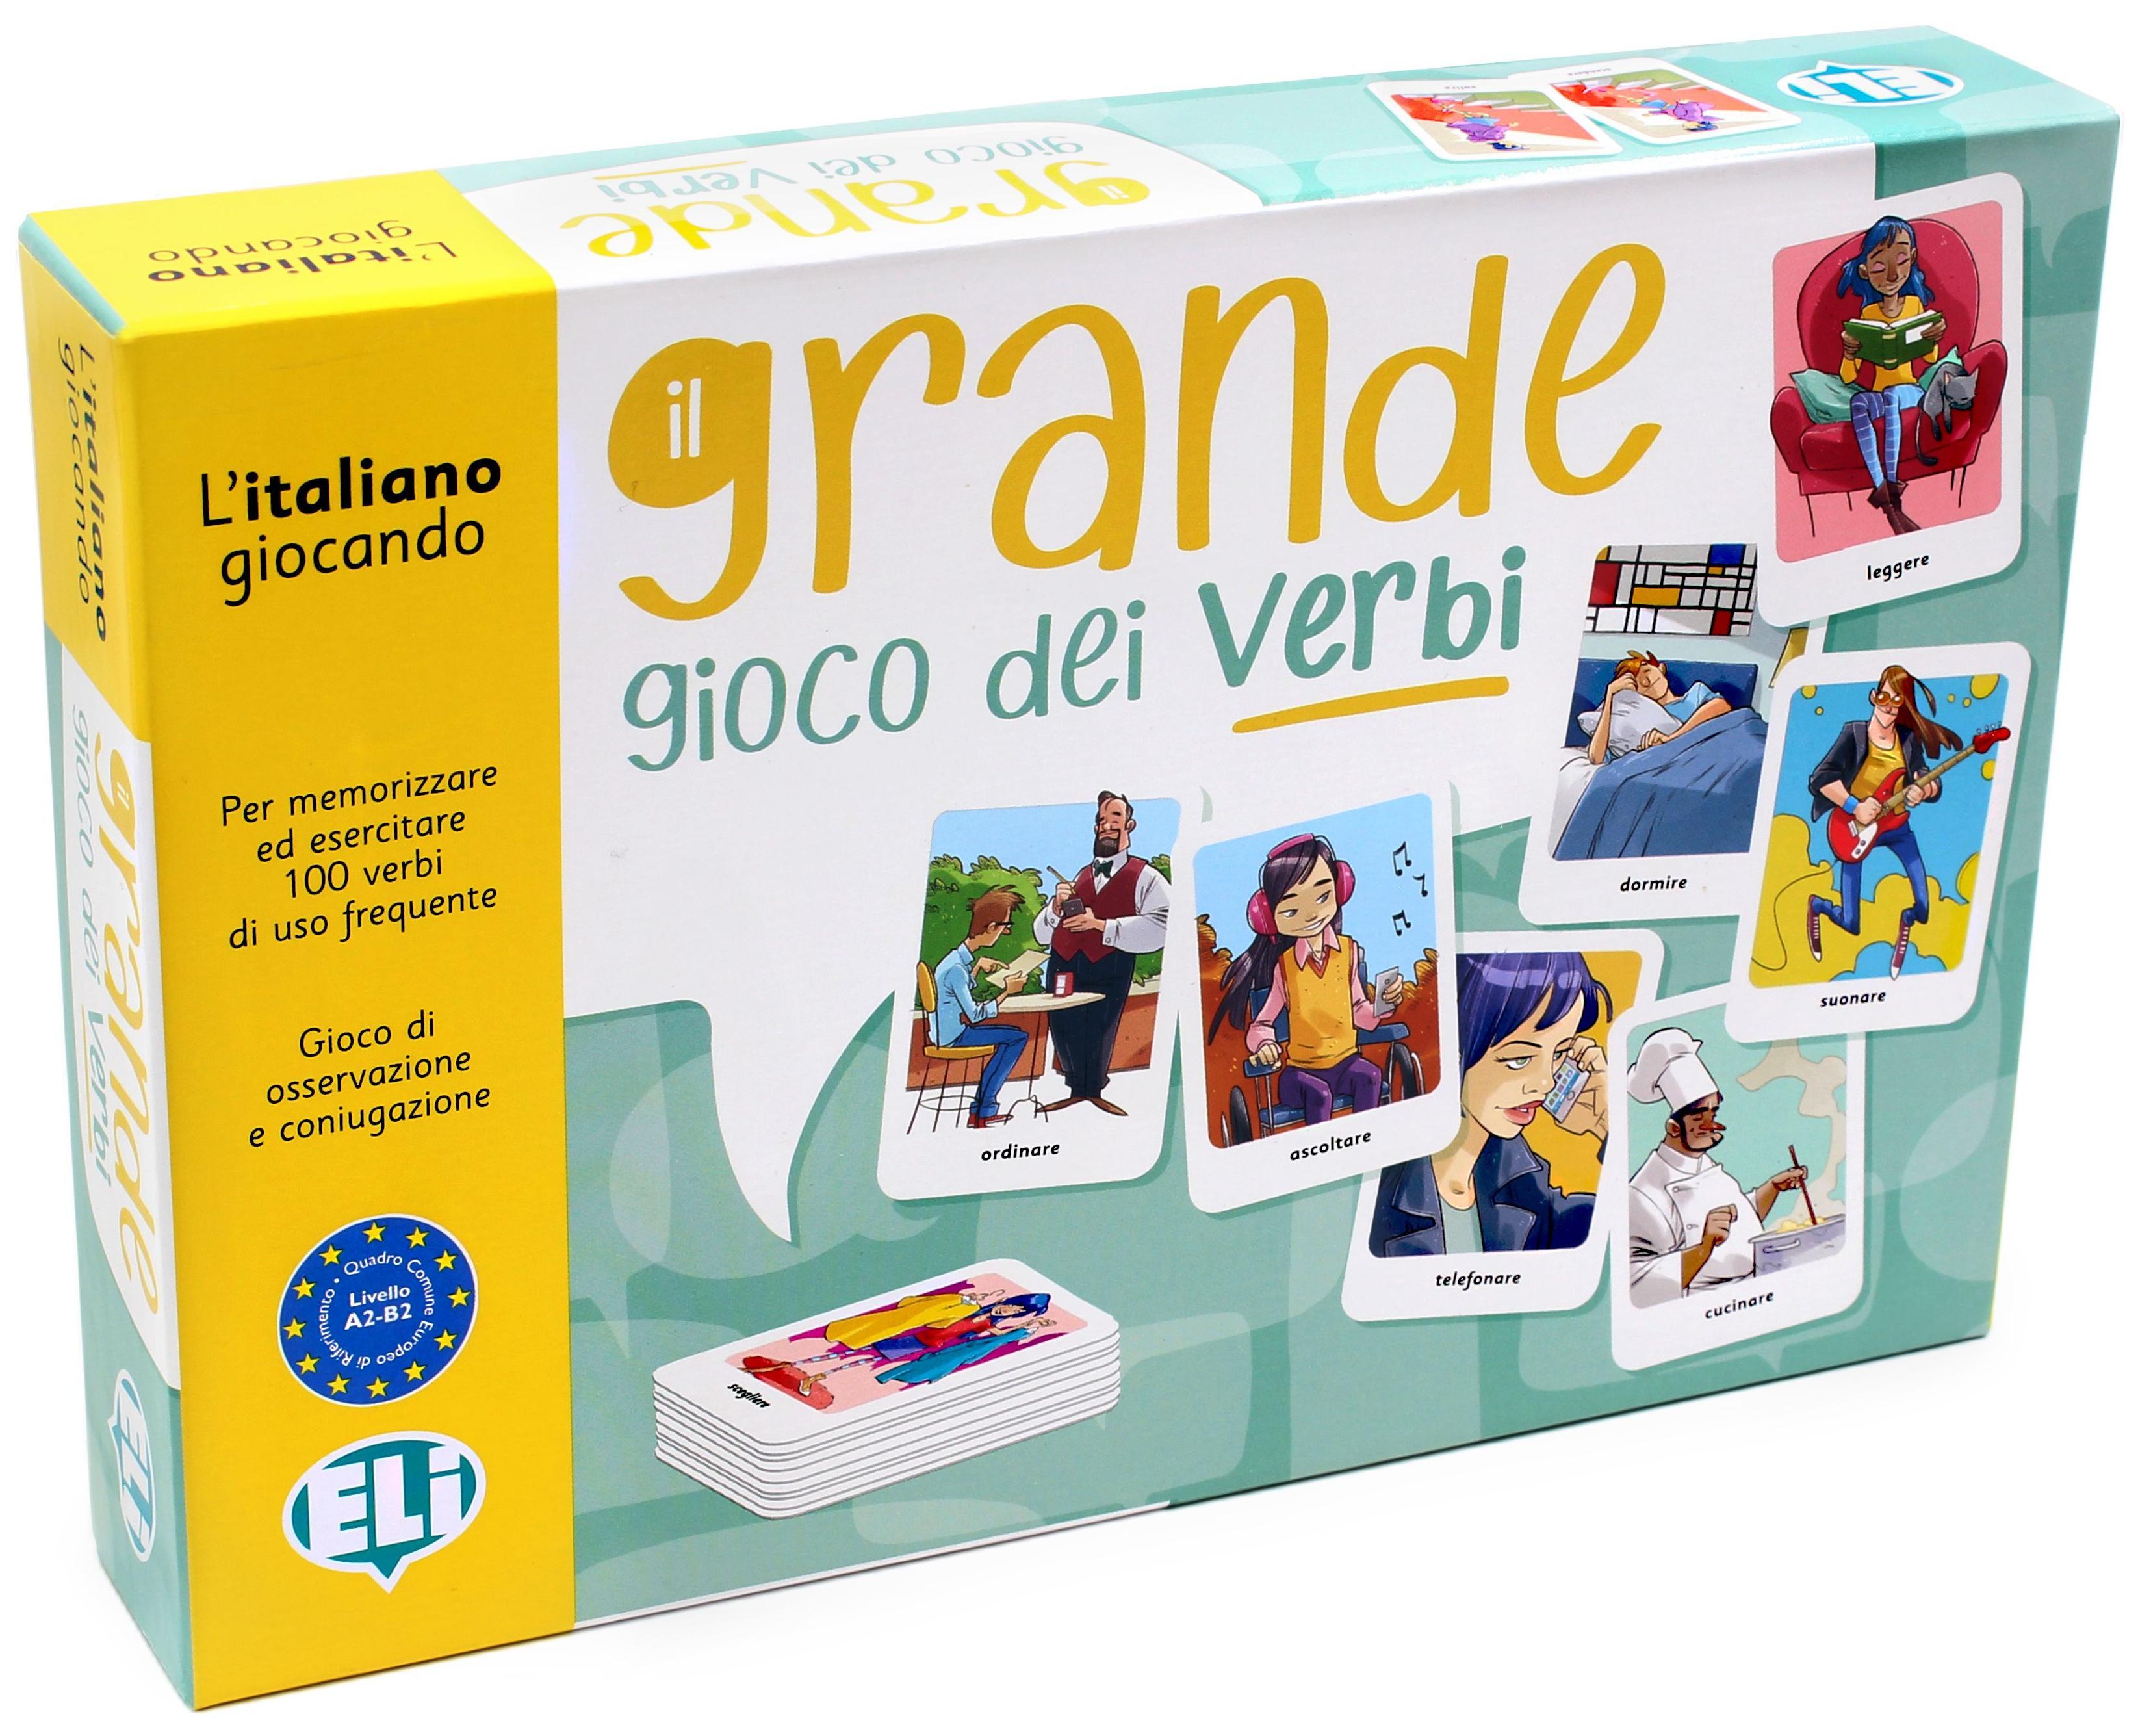 IL GRANDE GIOCO DEI VERBI (New ed.) Gioco